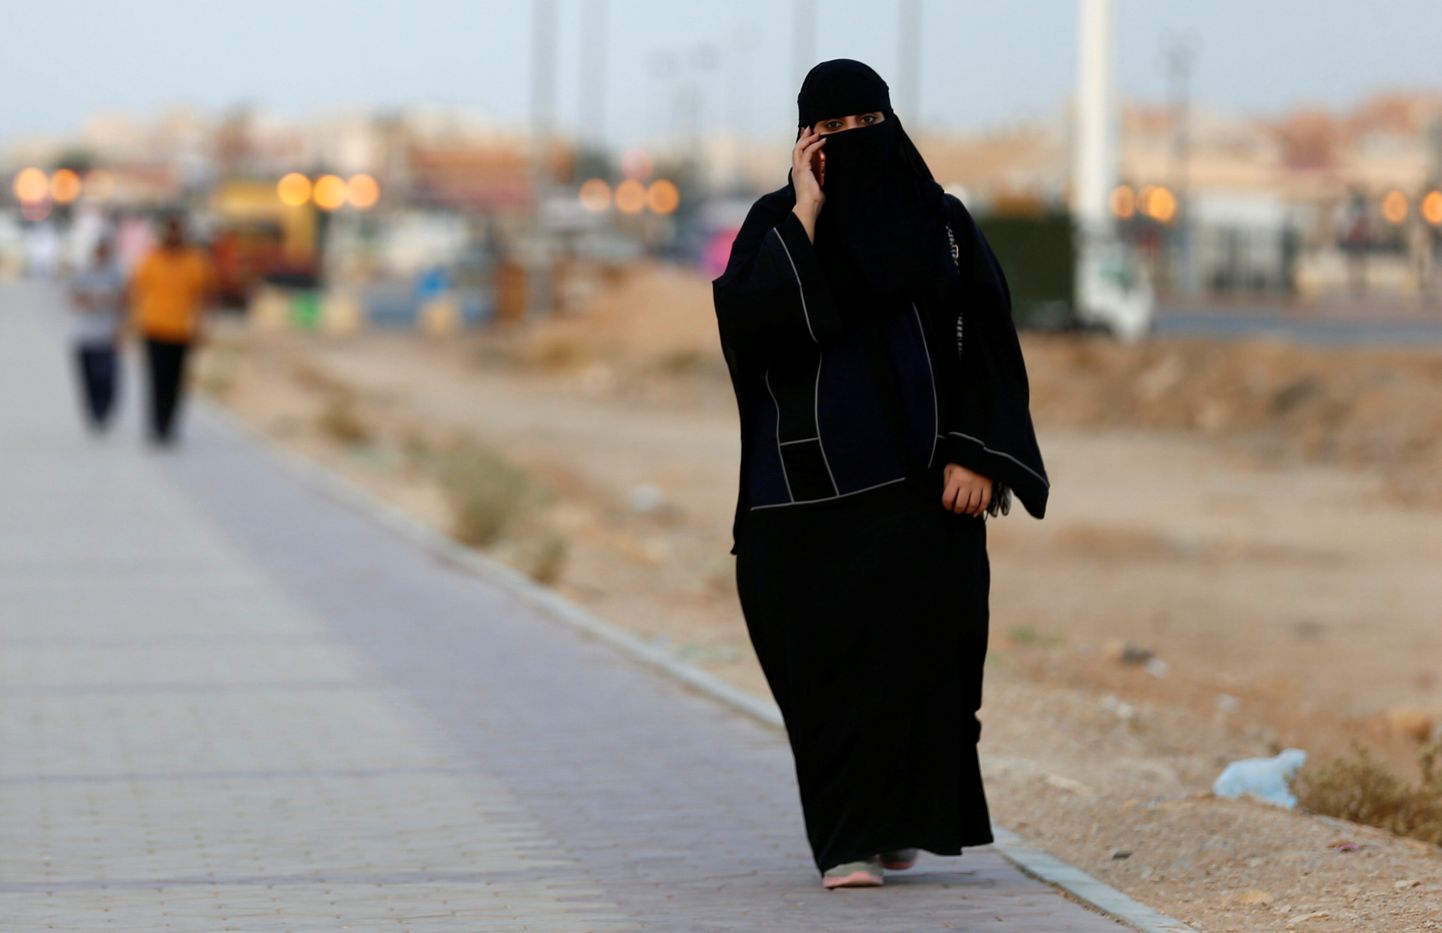 Saudi Araabias ähvardab esmakordselt surmanuhtlus naissoost aktivisti.